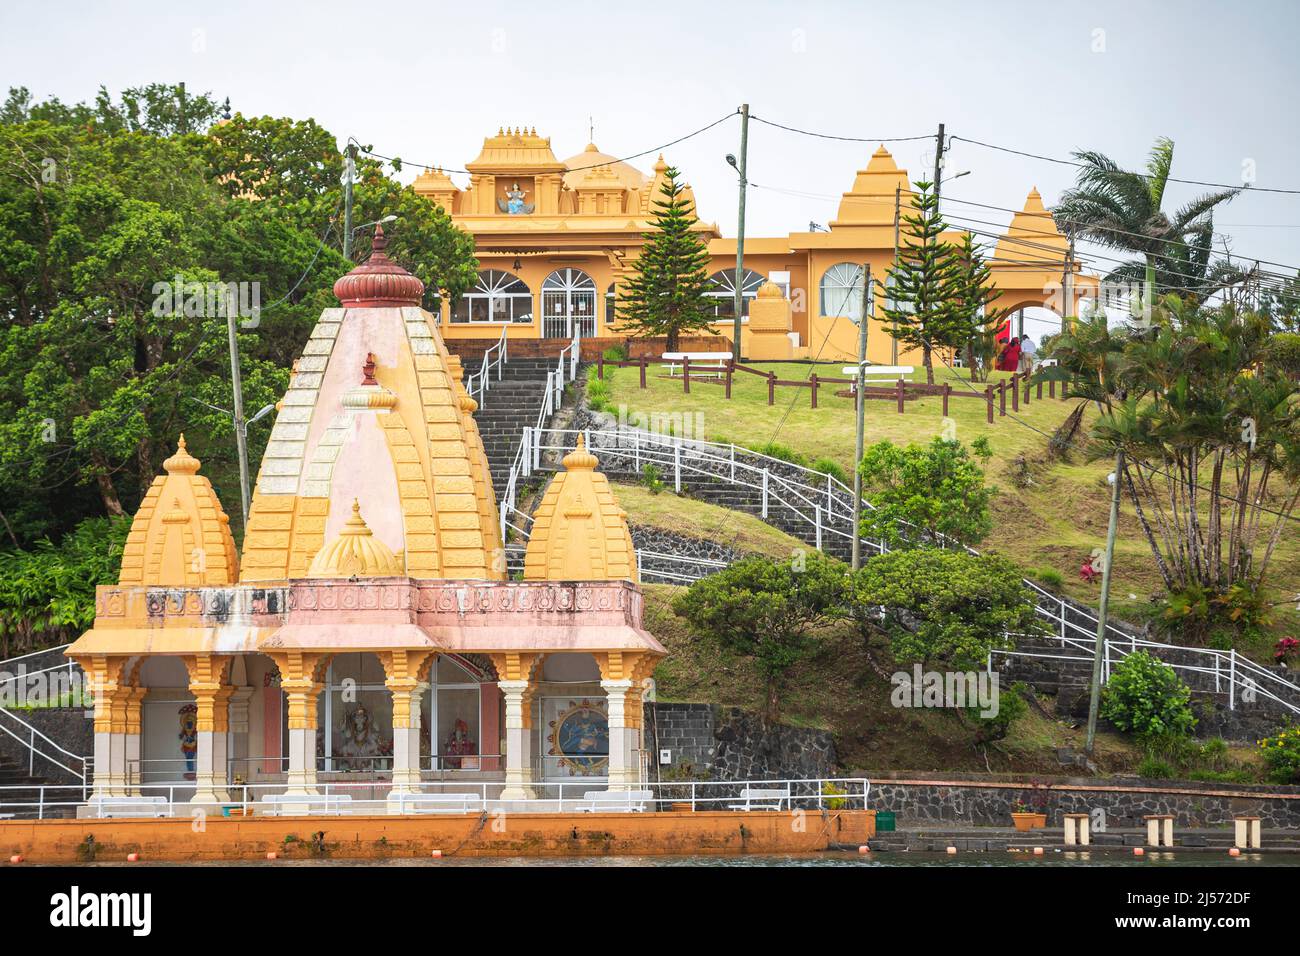 temple at Ganga Talao, Mauritius. Stock Photo